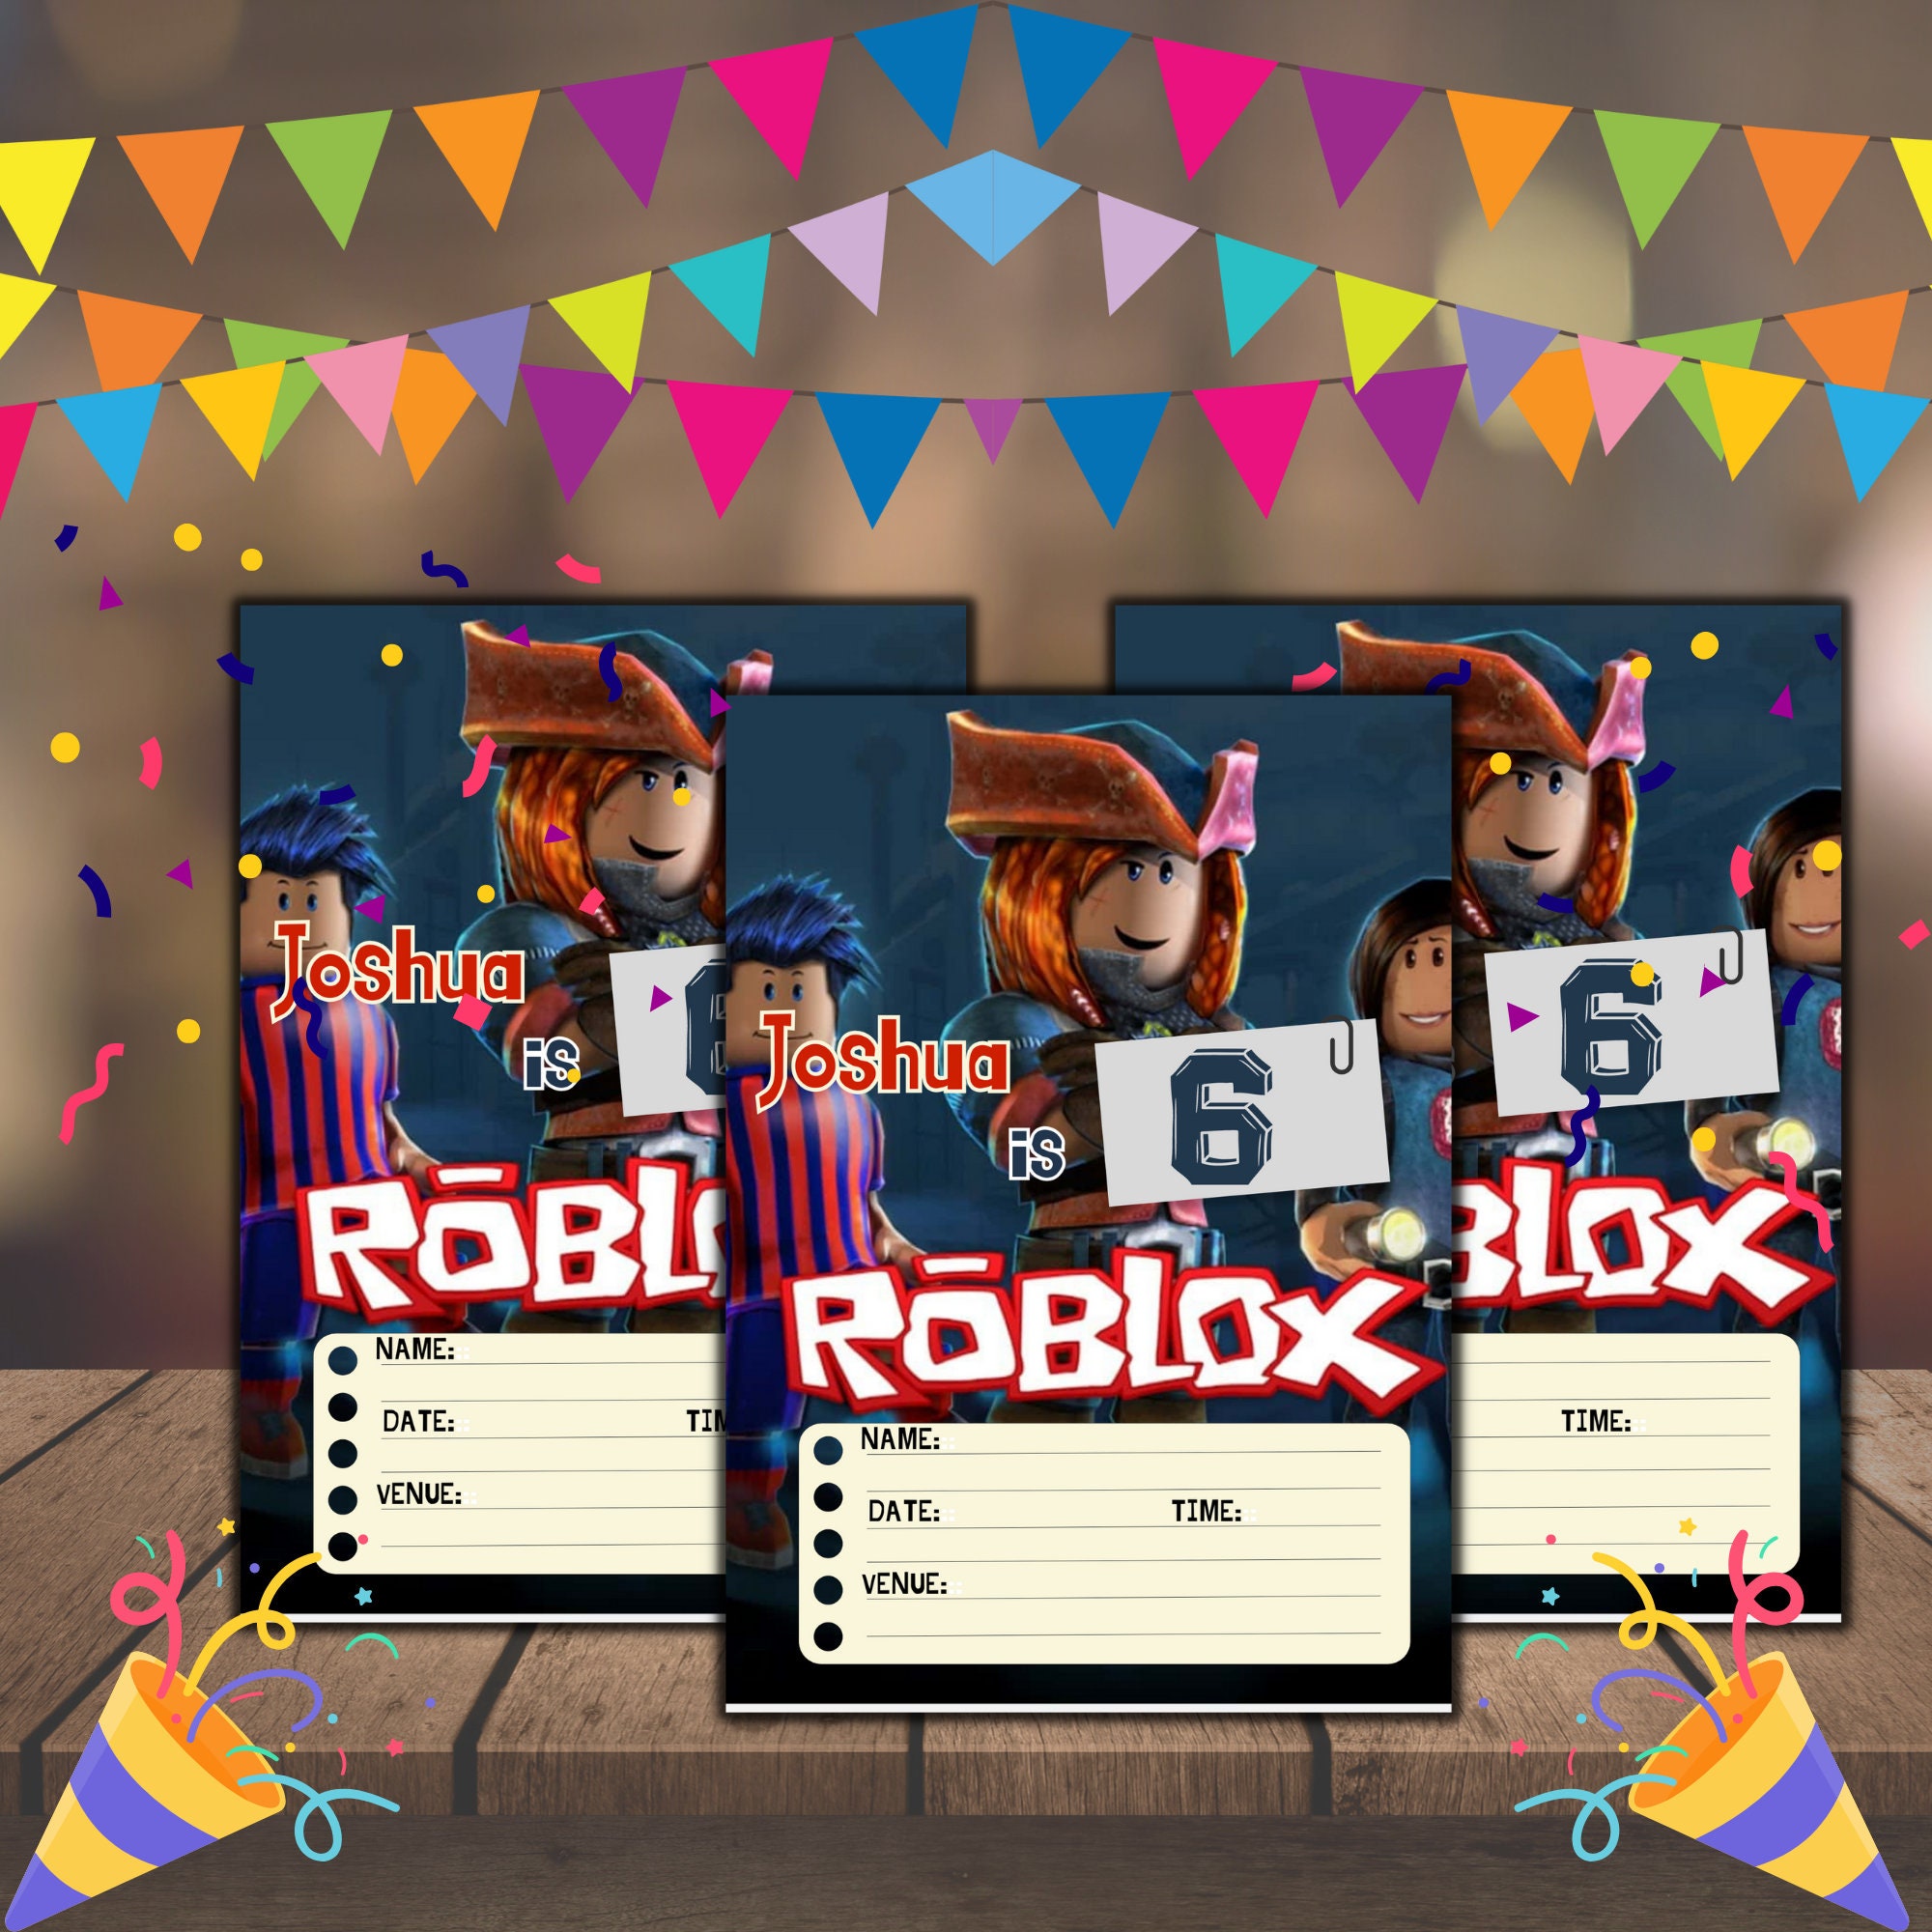 Roblox - Video Invitaciones Editables Free